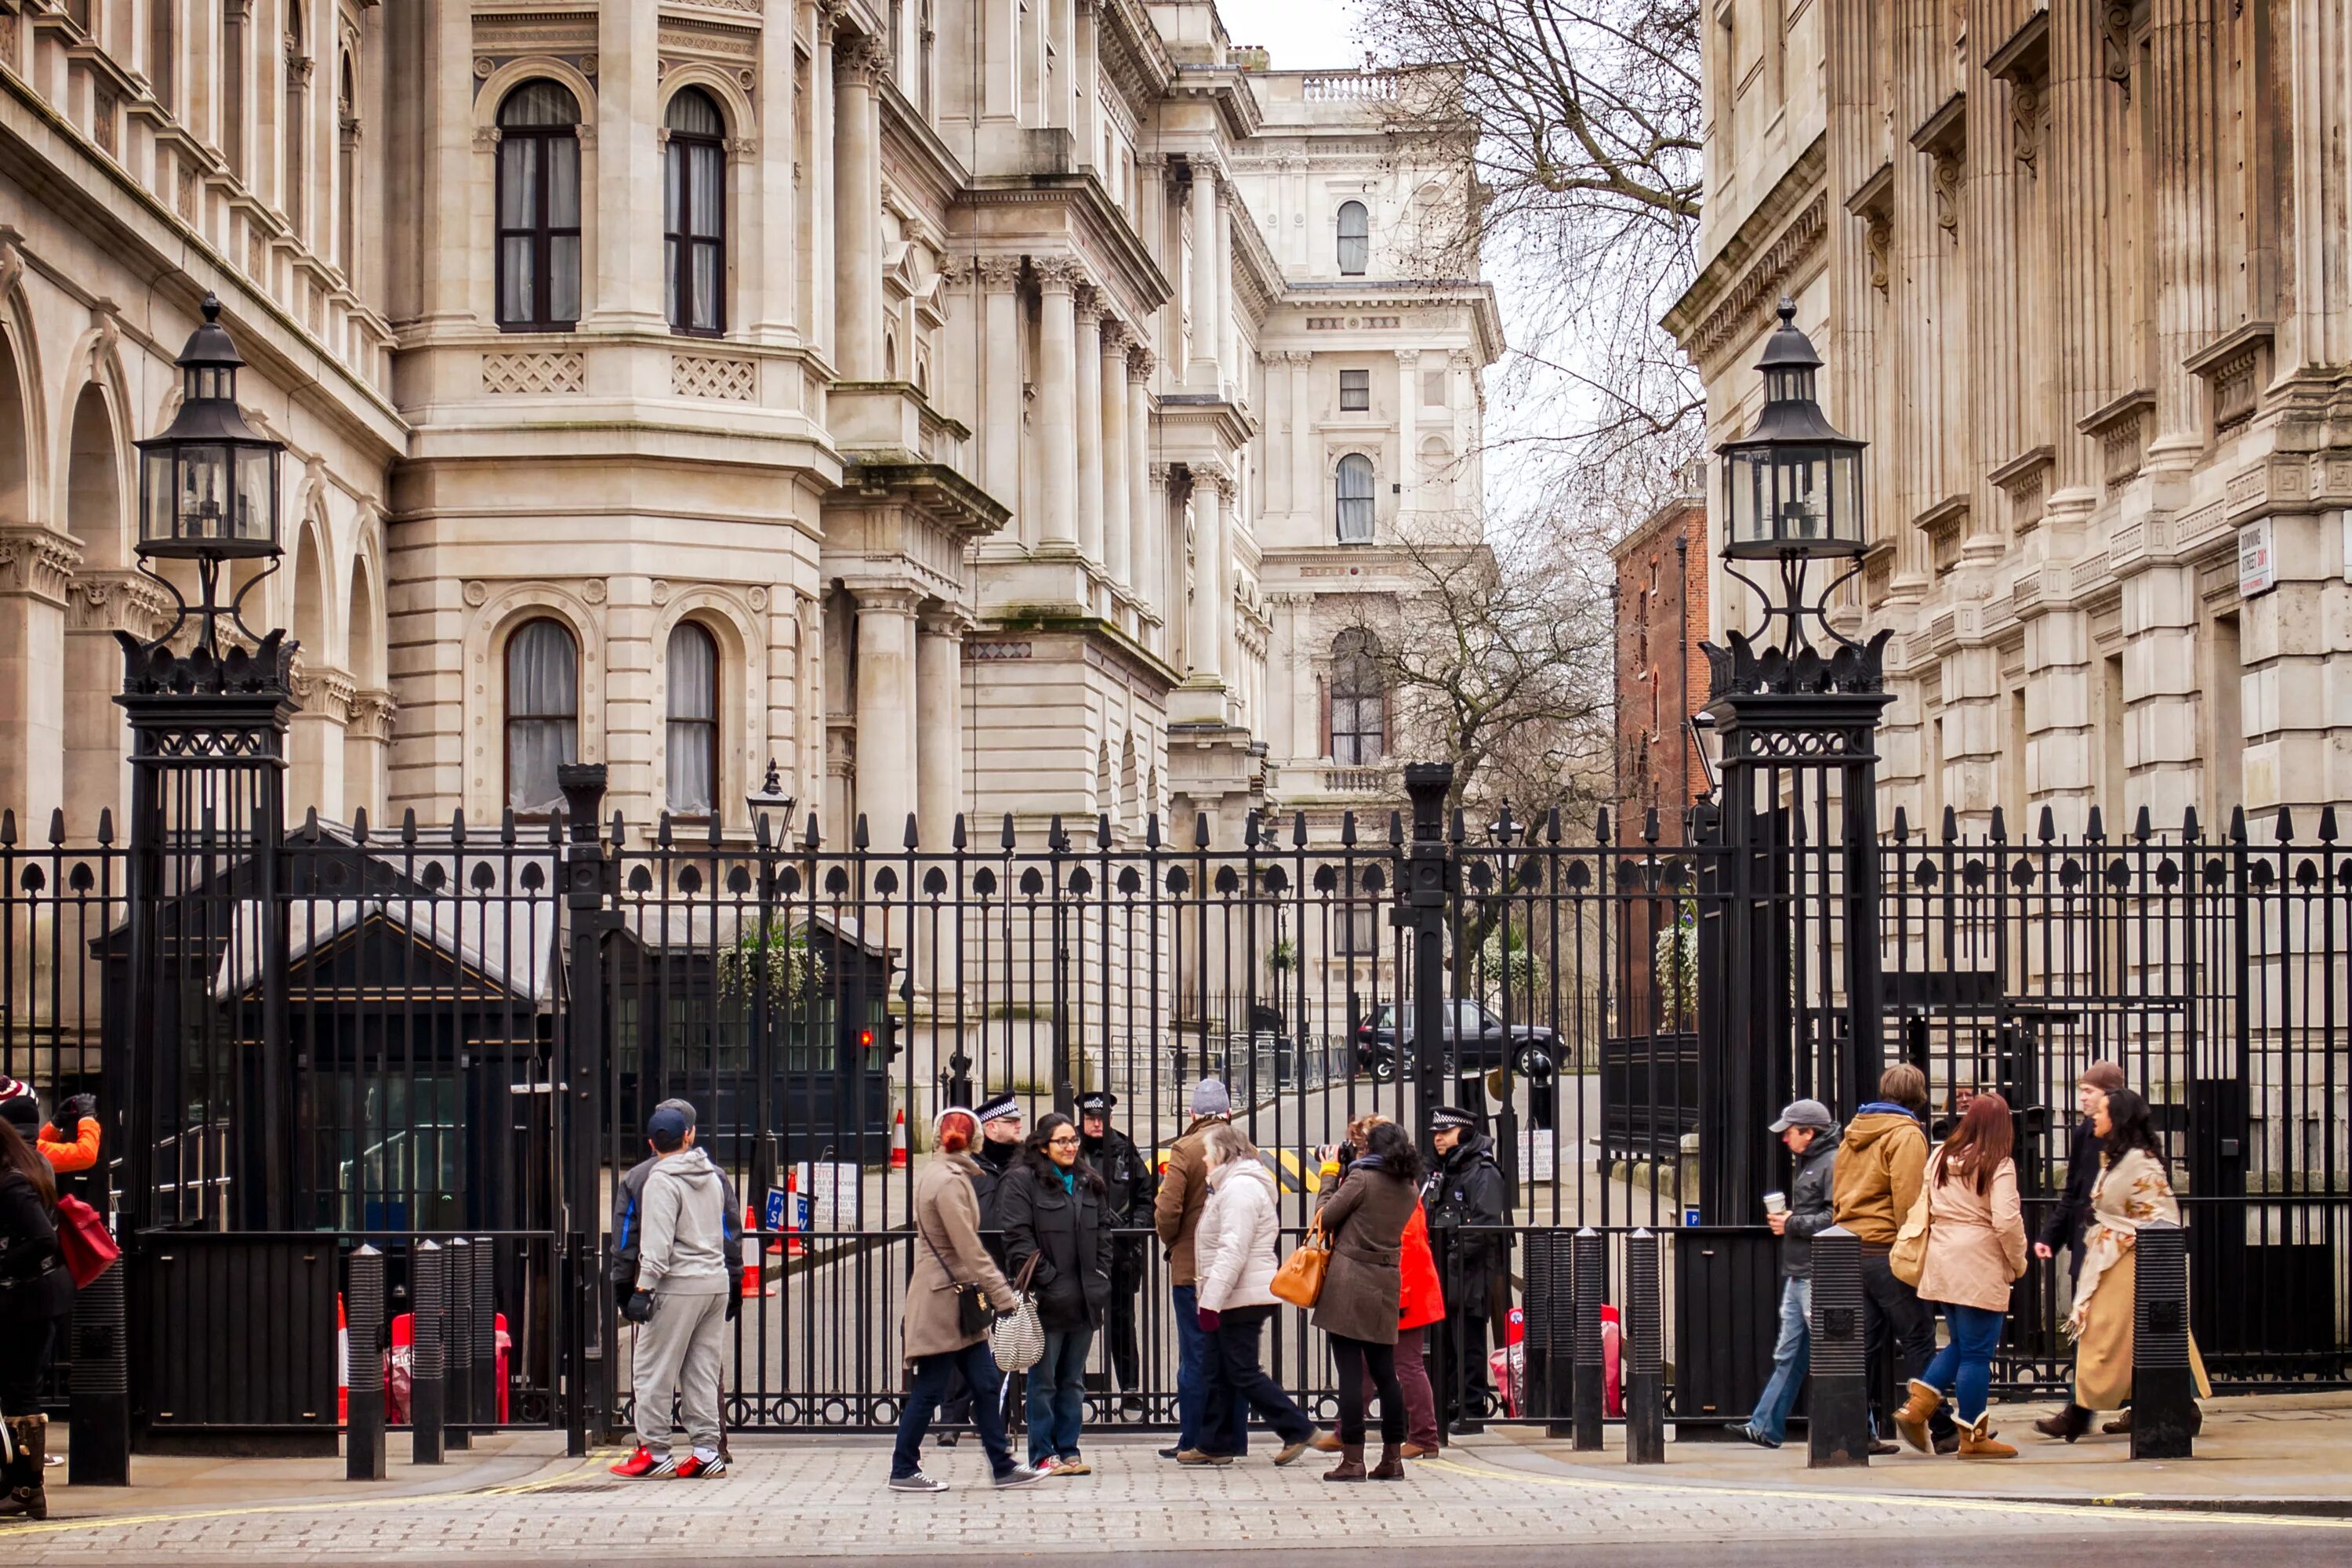 Даунинг-стрит 10 в Лондоне. Улица Даунинг стрит в Лондоне. Резиденция премьер-министра Великобритании в Лондоне. Даунинг стрит 10 Лондон ворота. Премьеры в лондоне